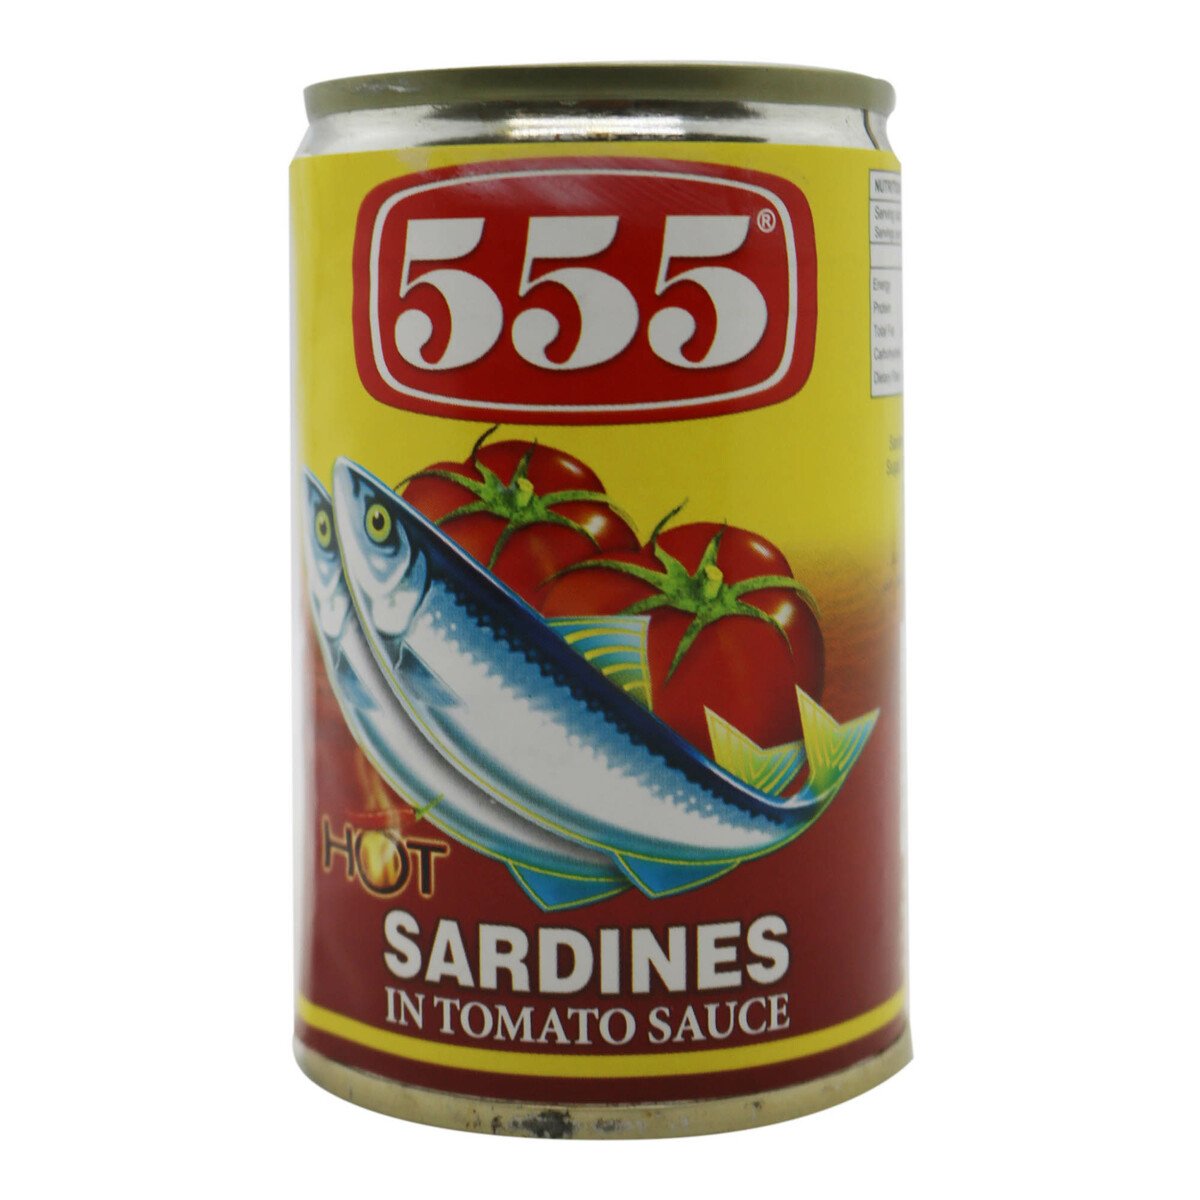 555 Sardines Yellow 155g